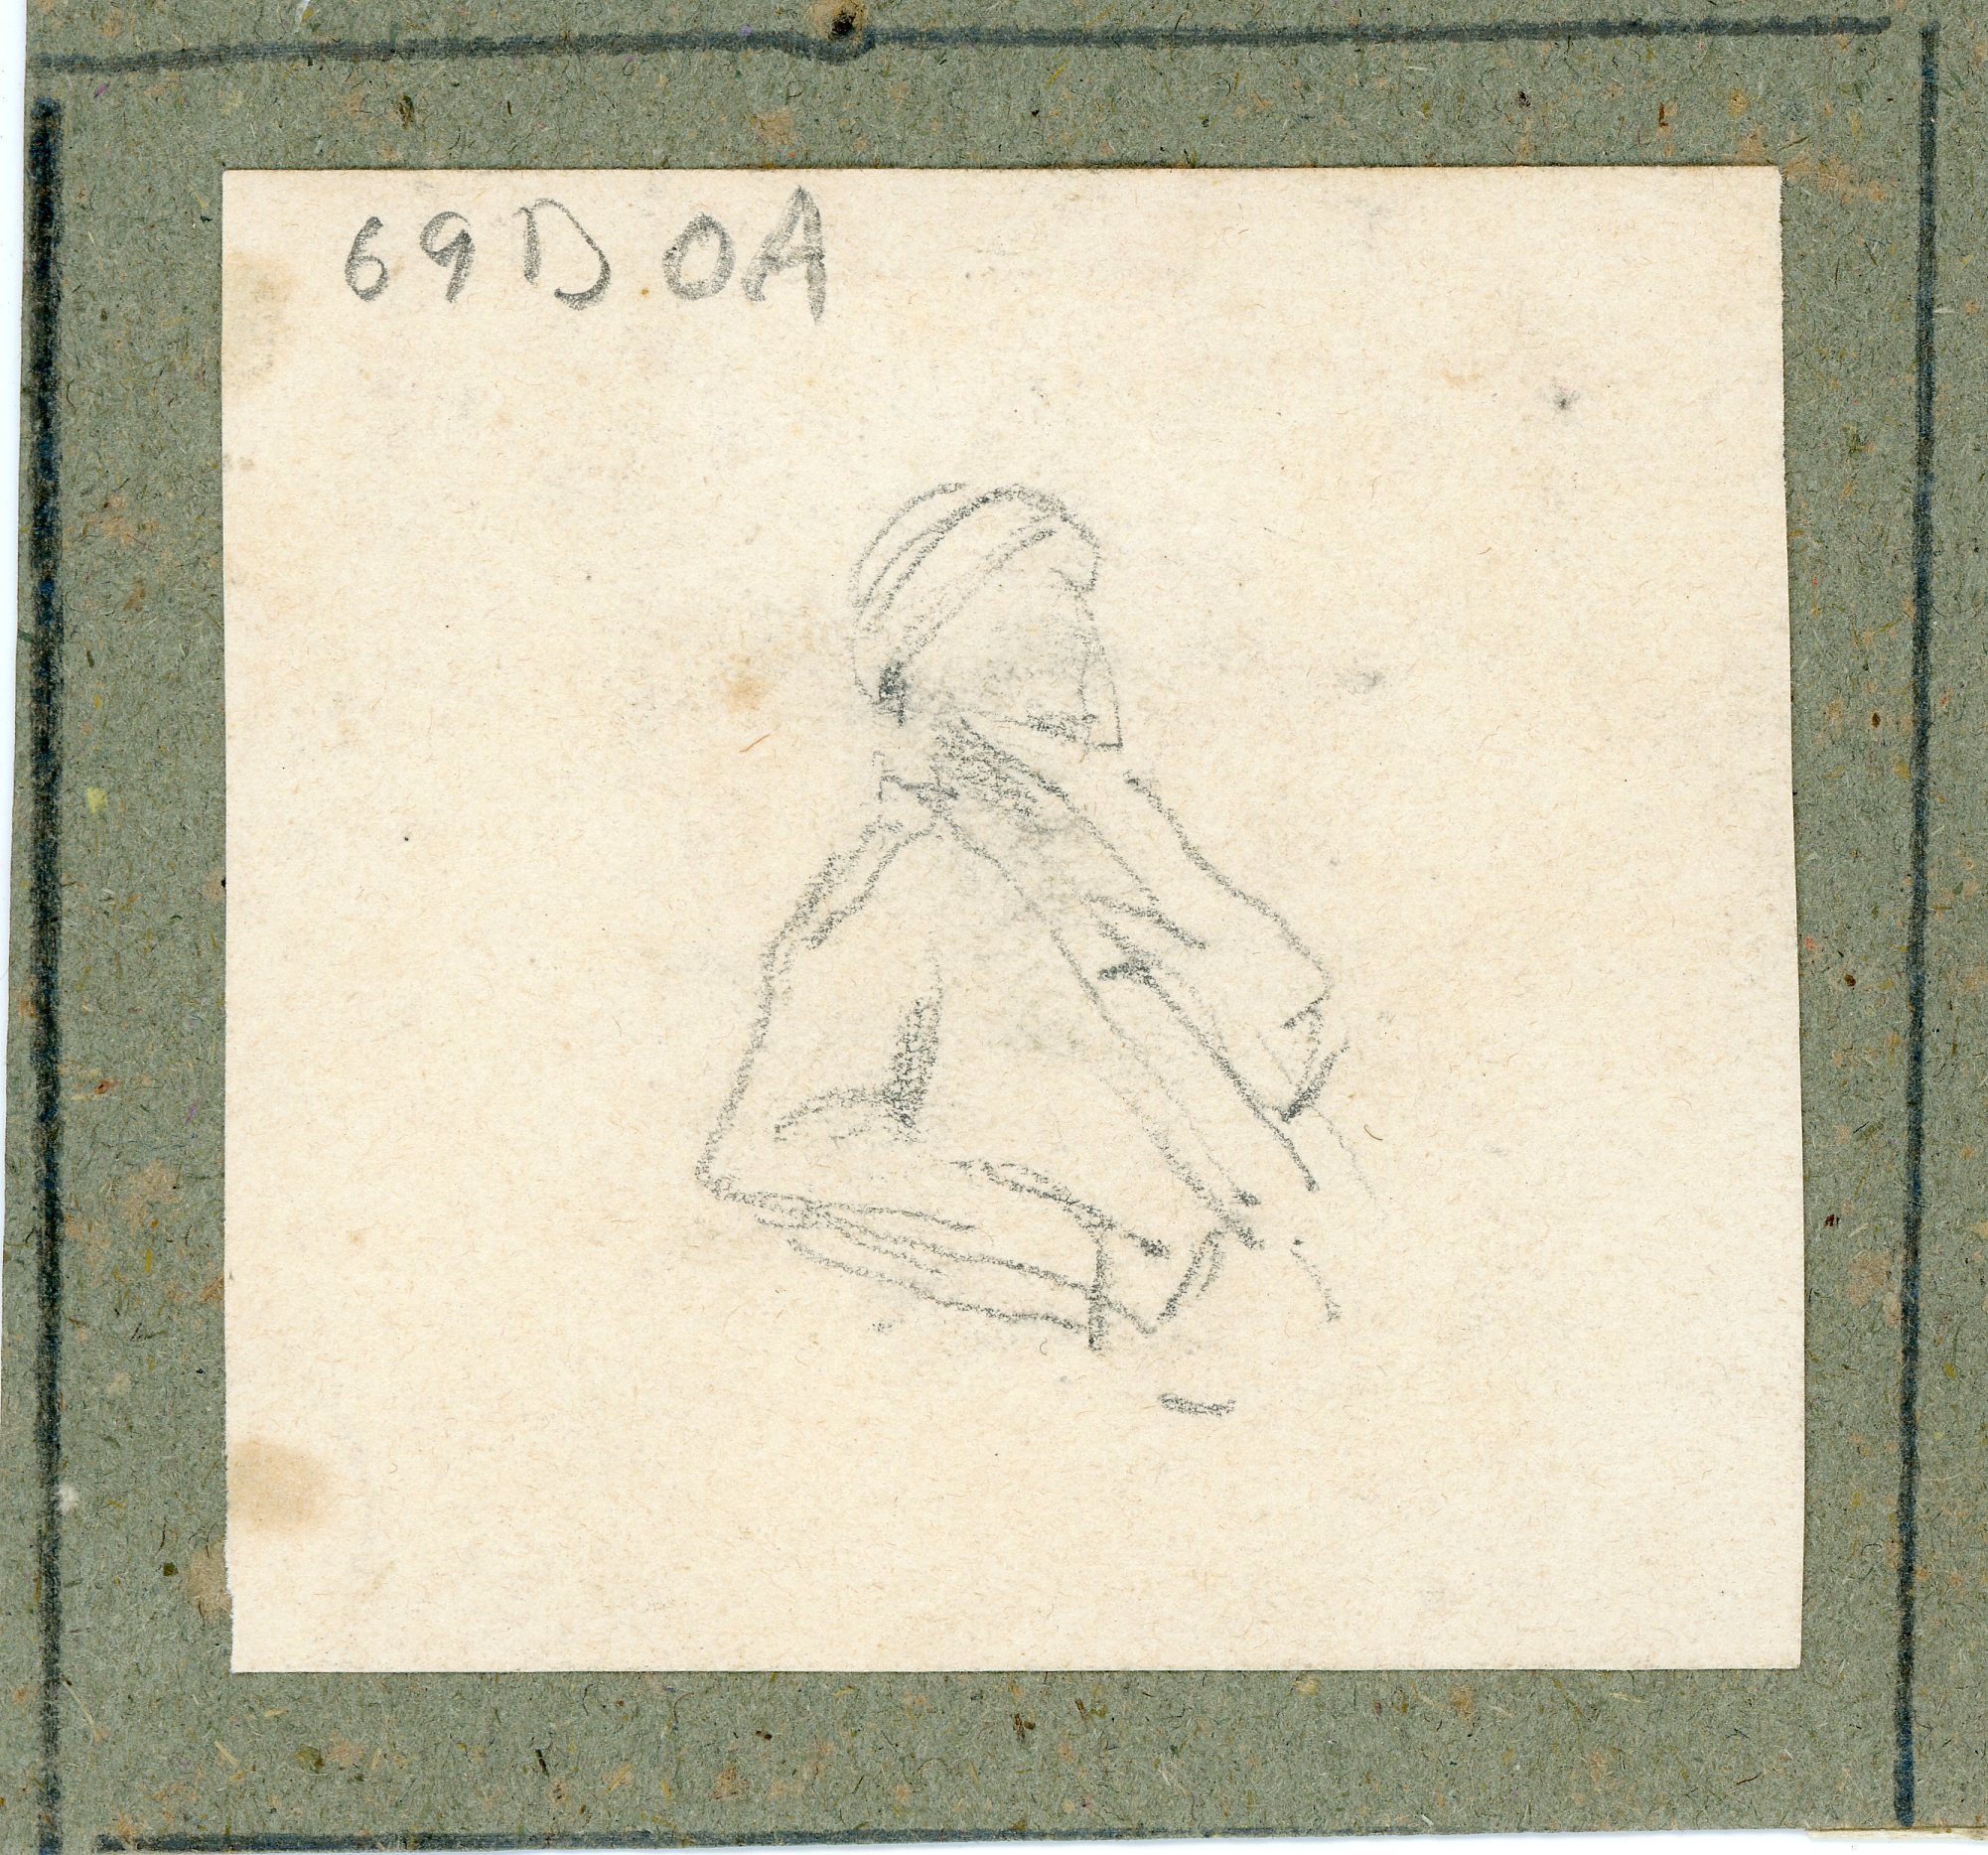 Uomo a mezzo busto, ritratto (disegno) di Boggiani, Guido - ambito Italia settentrionale (seconda metà XX)